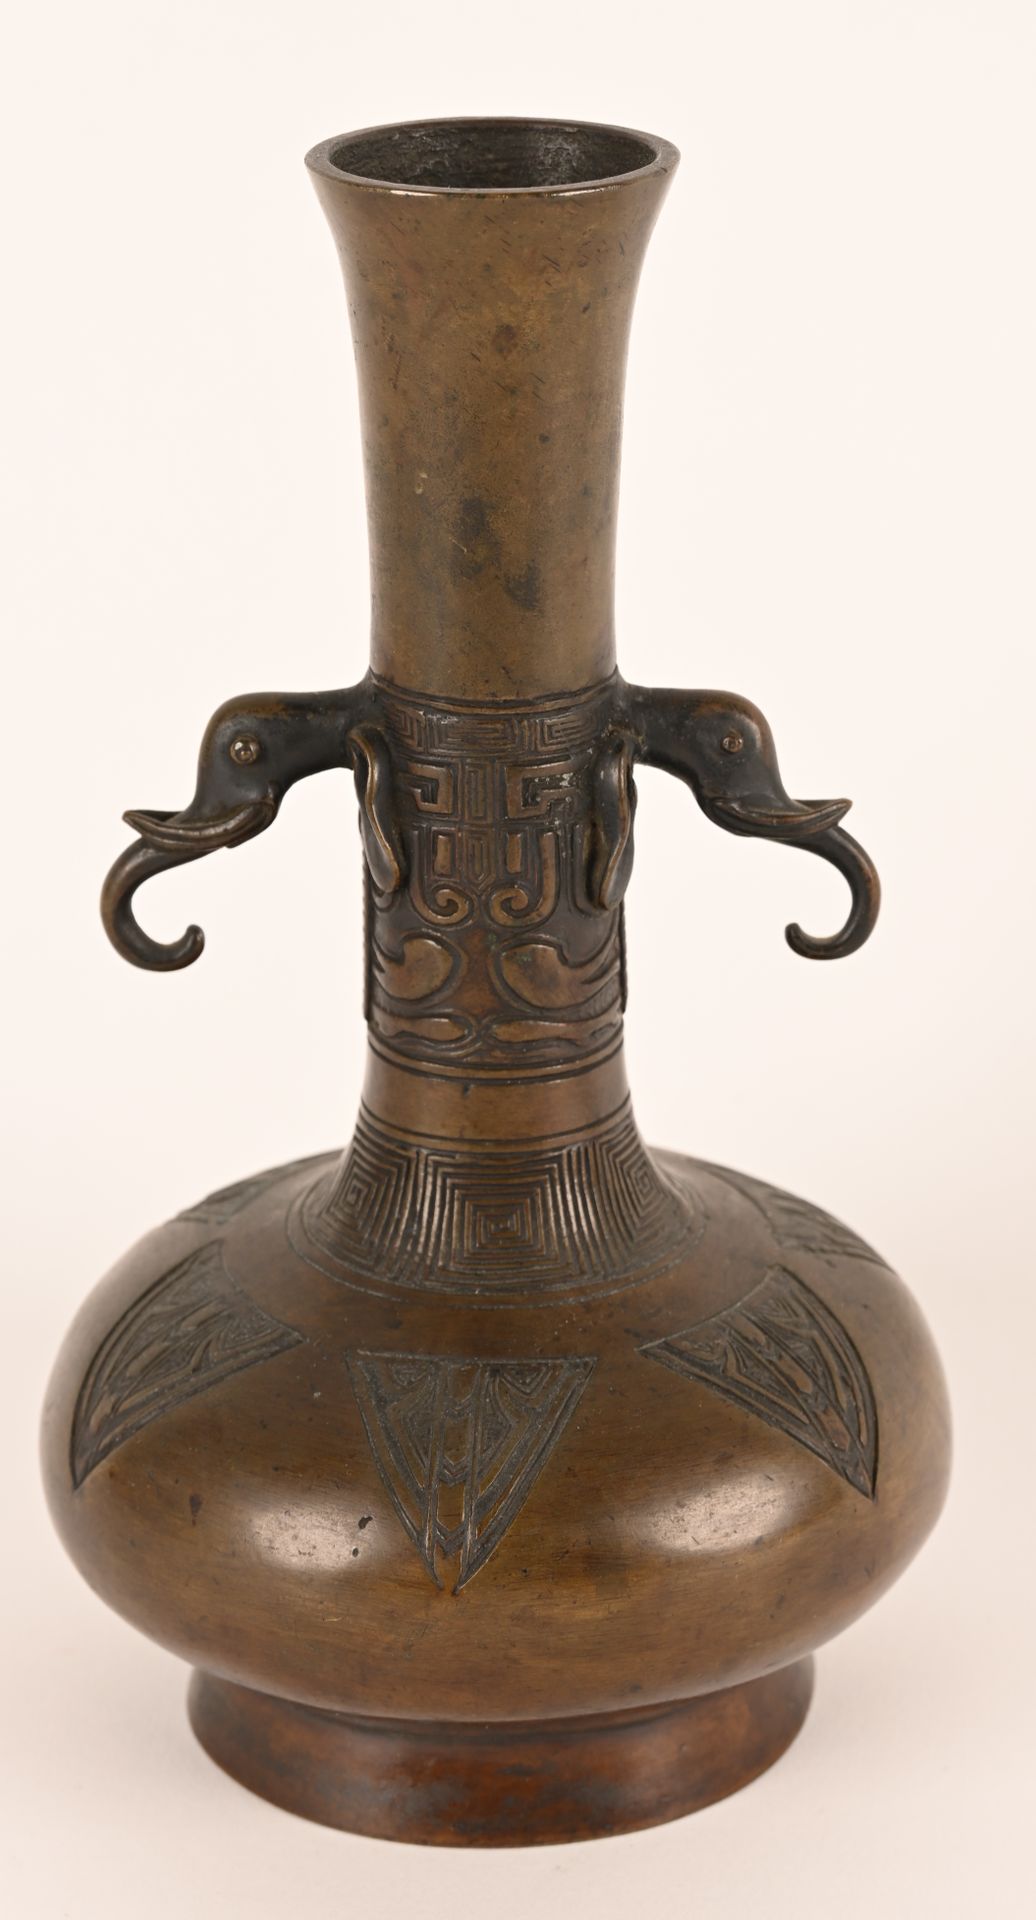 Vase en bronze patiné à décor gravé CHINA.
Vase in patinated bronze with engrave&hellip;